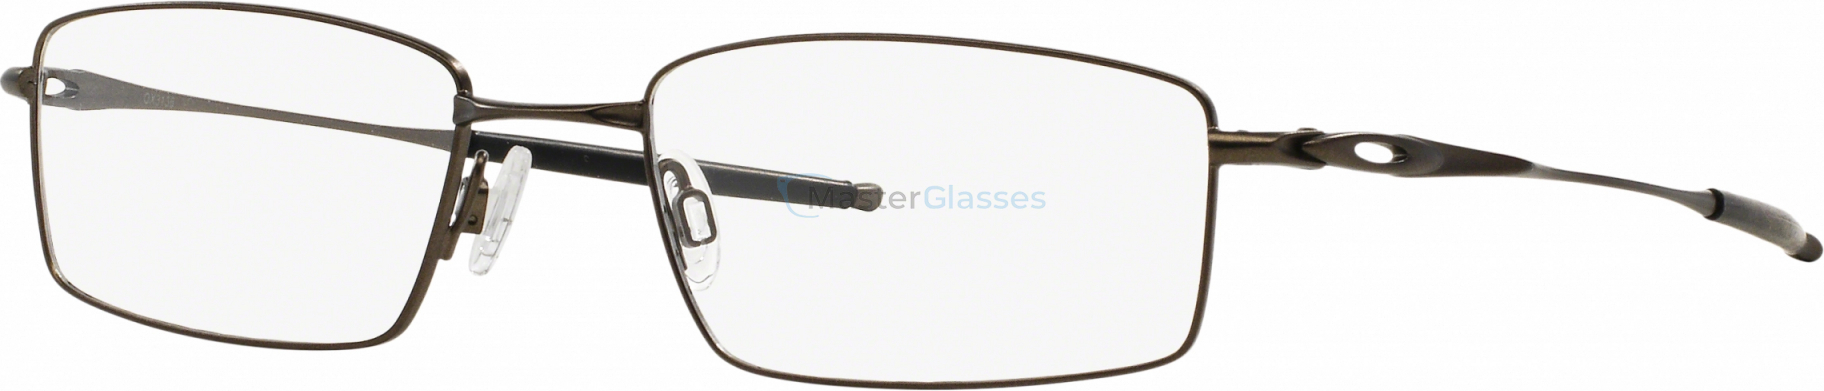 Oakley Top Spinner Presbyopia OX3136-03